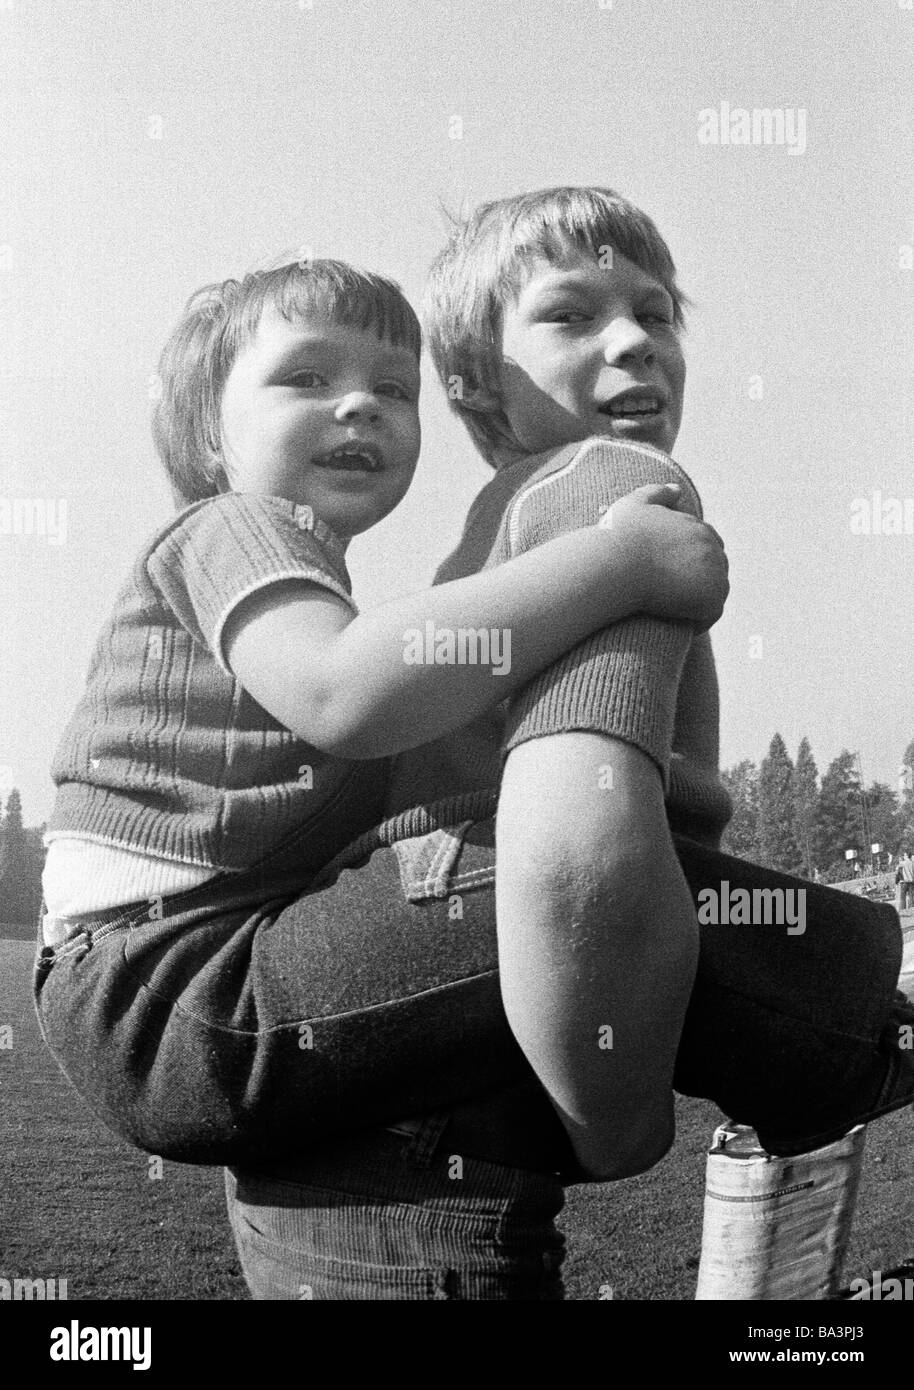 Negli anni settanta, foto in bianco e nero, persone, bambini, ragazzo porta un giovane ragazzo piggyback, di età compresa tra i 10 e i 13 anni di età compresa tra 6 e 8 anni Foto Stock